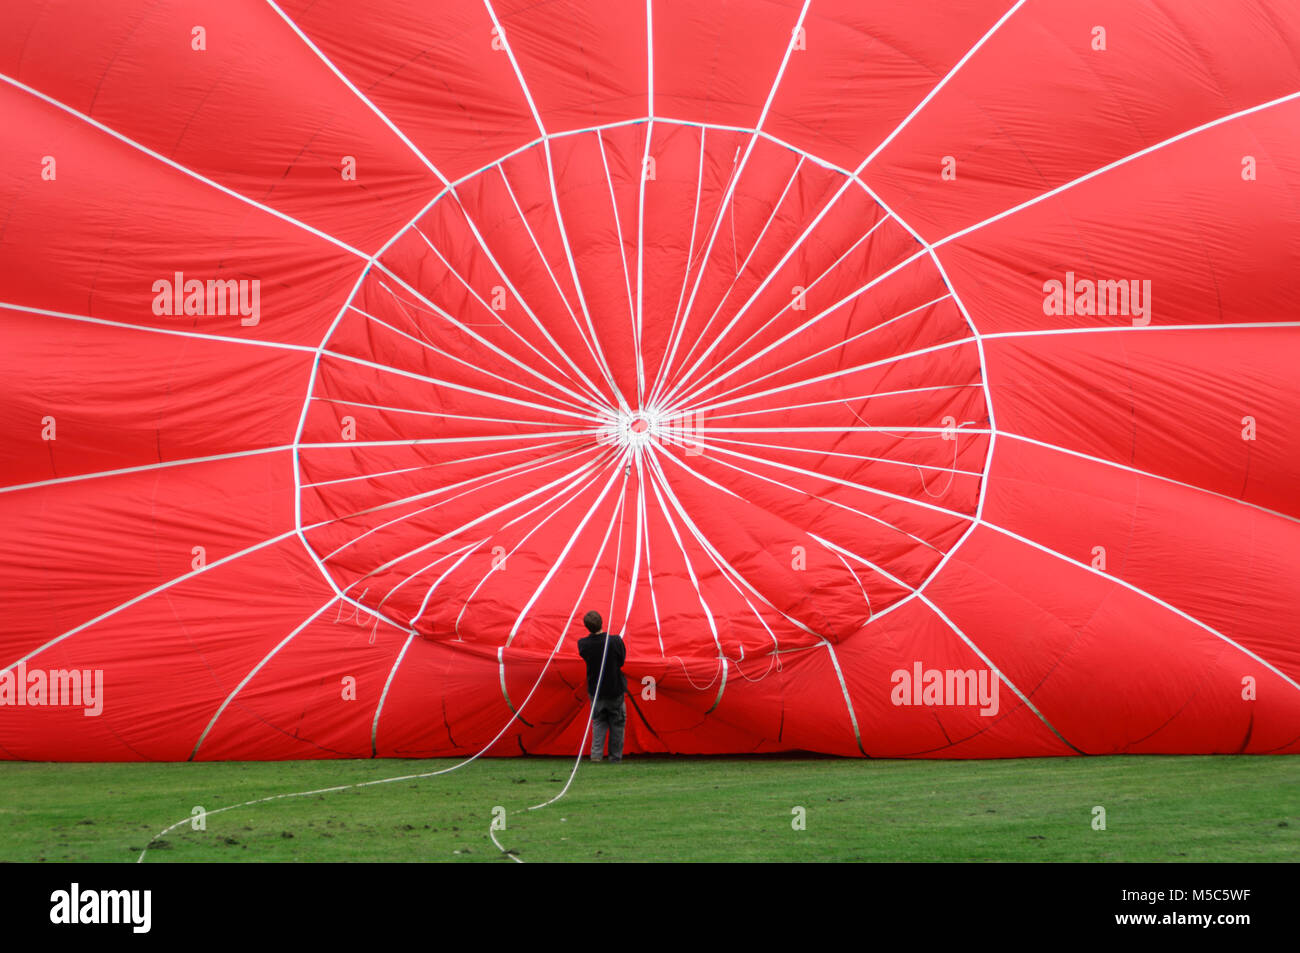 Un jeune homme est titulaire sur le truquage d'un ballon à air chaud pendant qu'il est gonflé avant un vol en ballon Banque D'Images